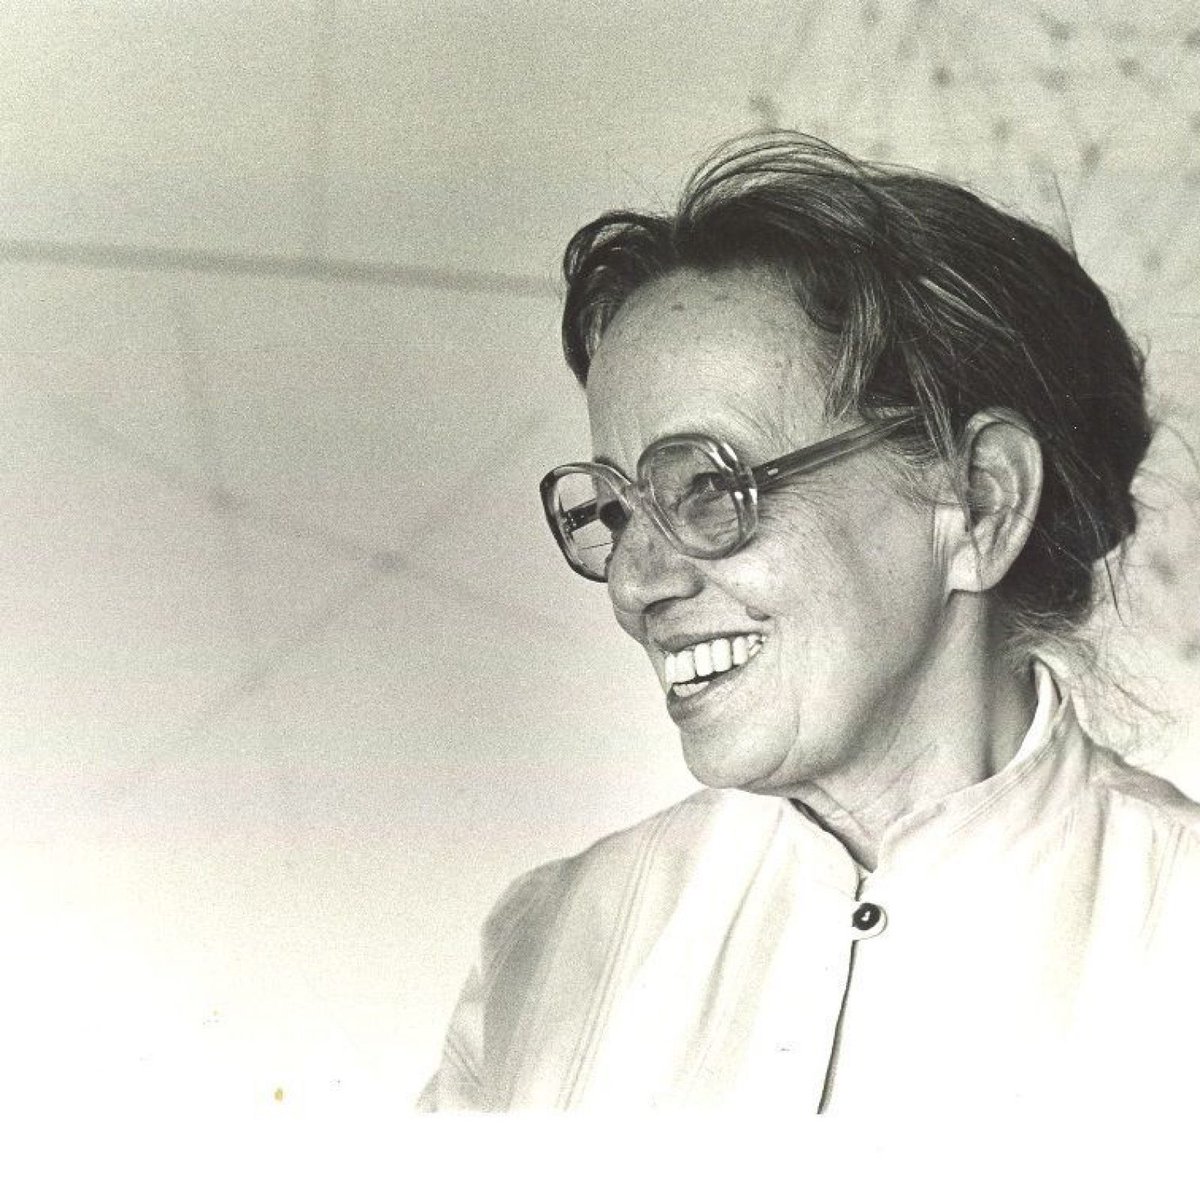 Gego (Alemania-Venezuela. 1912-94)Gertrudis Goldsmith es una de las artistas latinoamericanas más importantes de segunda mitad de siglo XX. Representante de la abstracción y el cinetismo, creó obras bi y tridimensionales llenas de poesía.